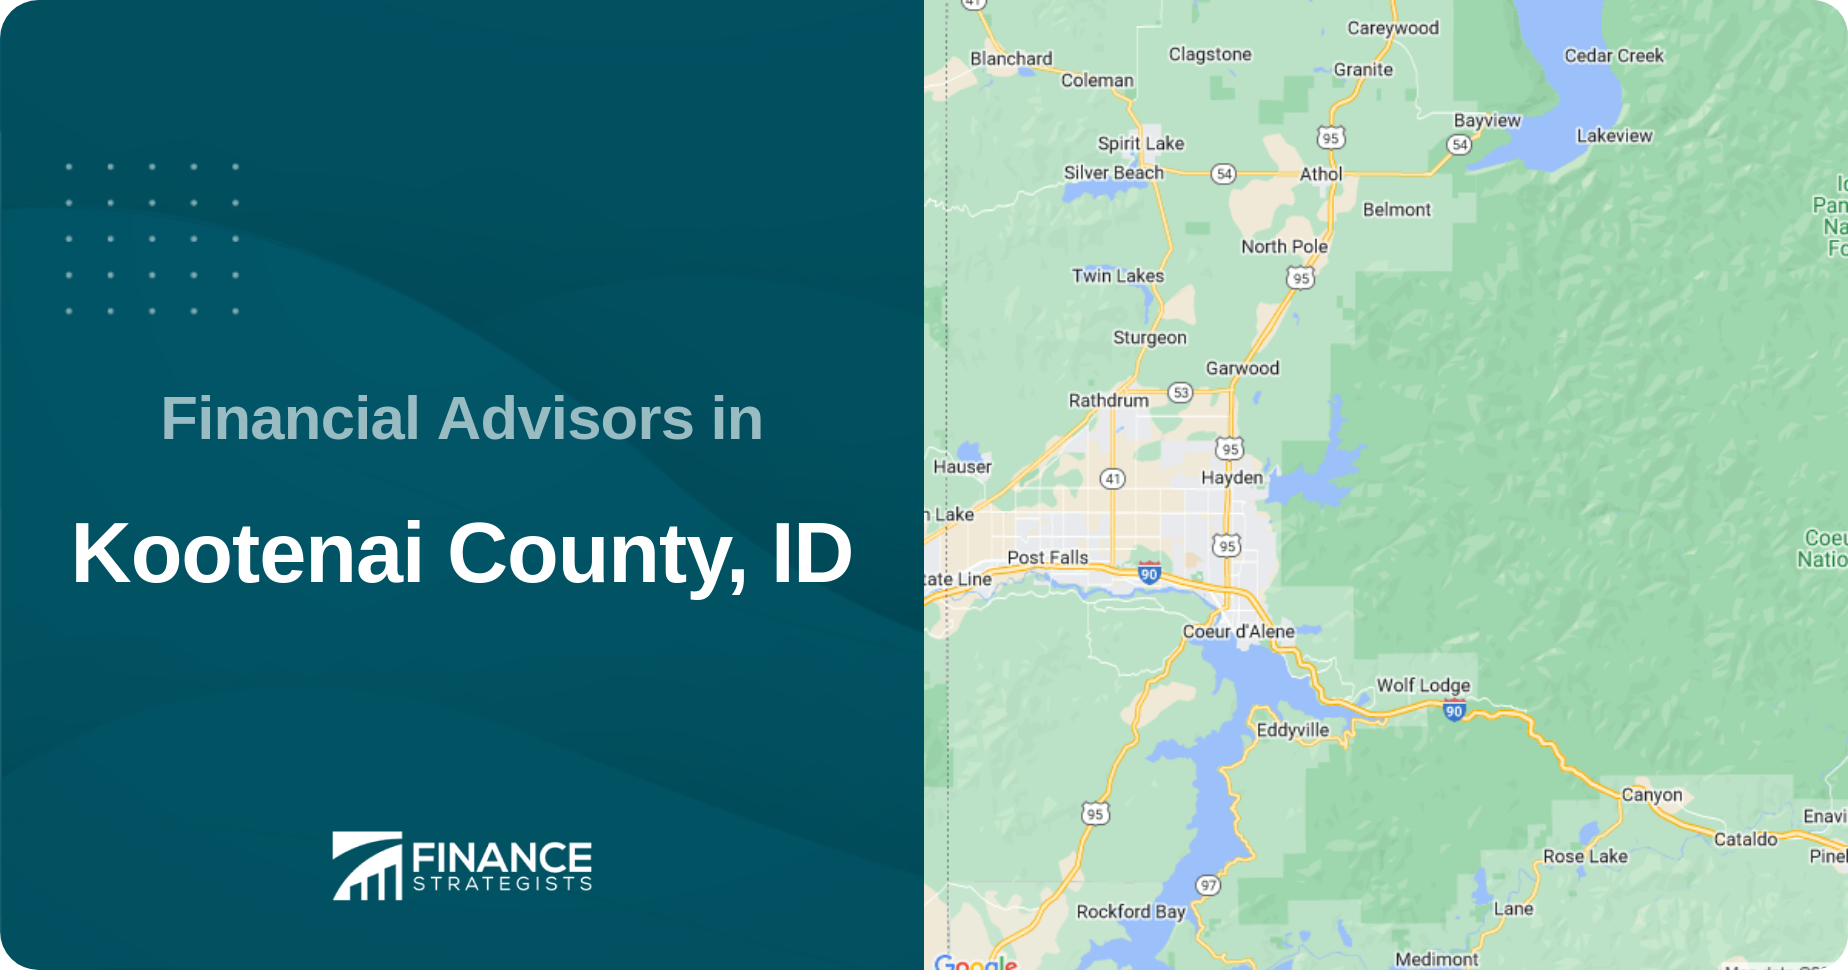 Financial Advisors in Kootenai County, ID